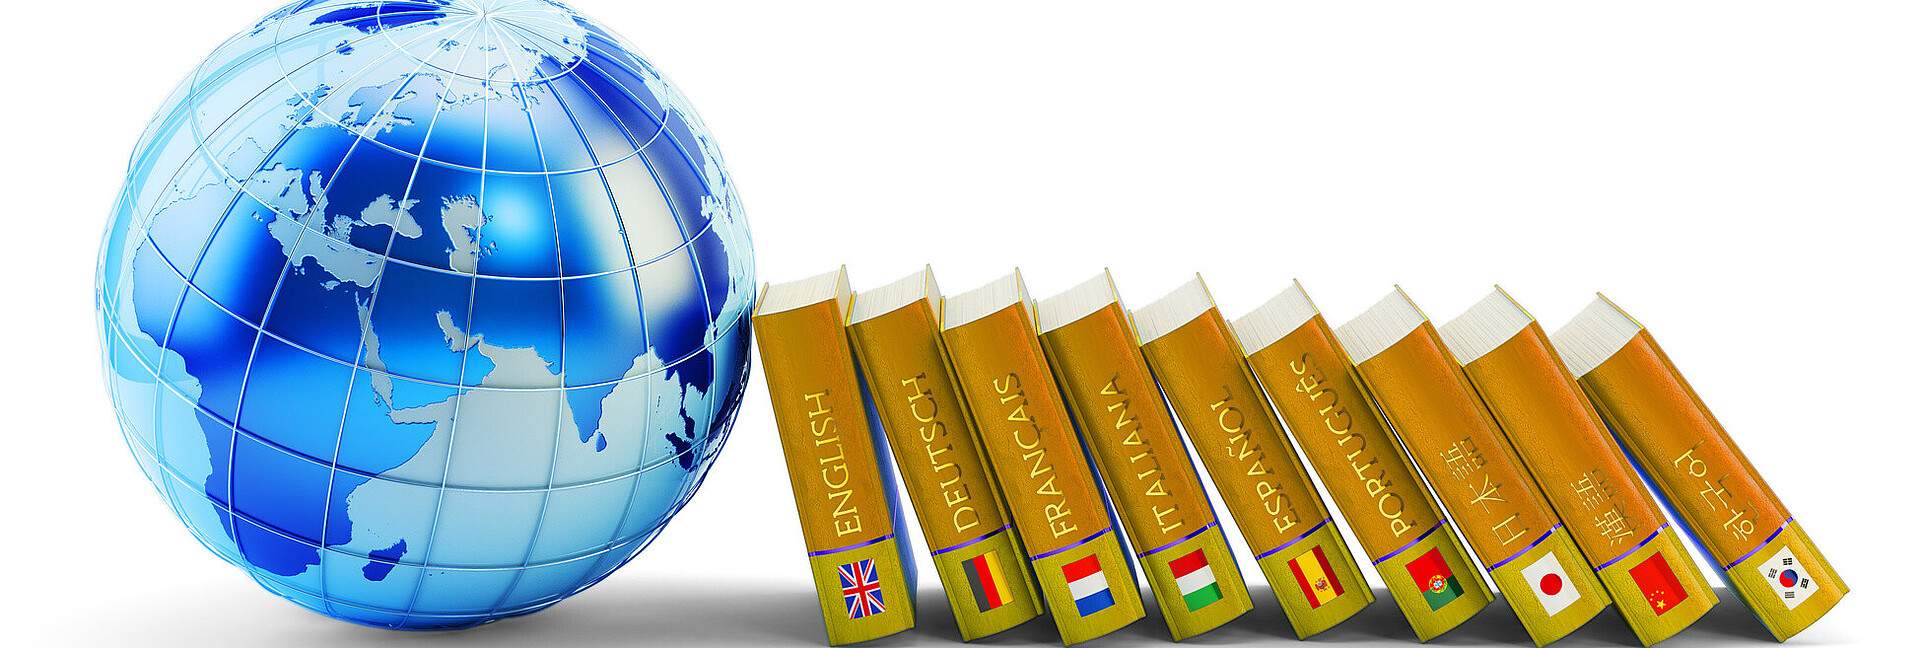 Blaue Weltkugel und Wörterbücher in unterschiedlichen Sprachen